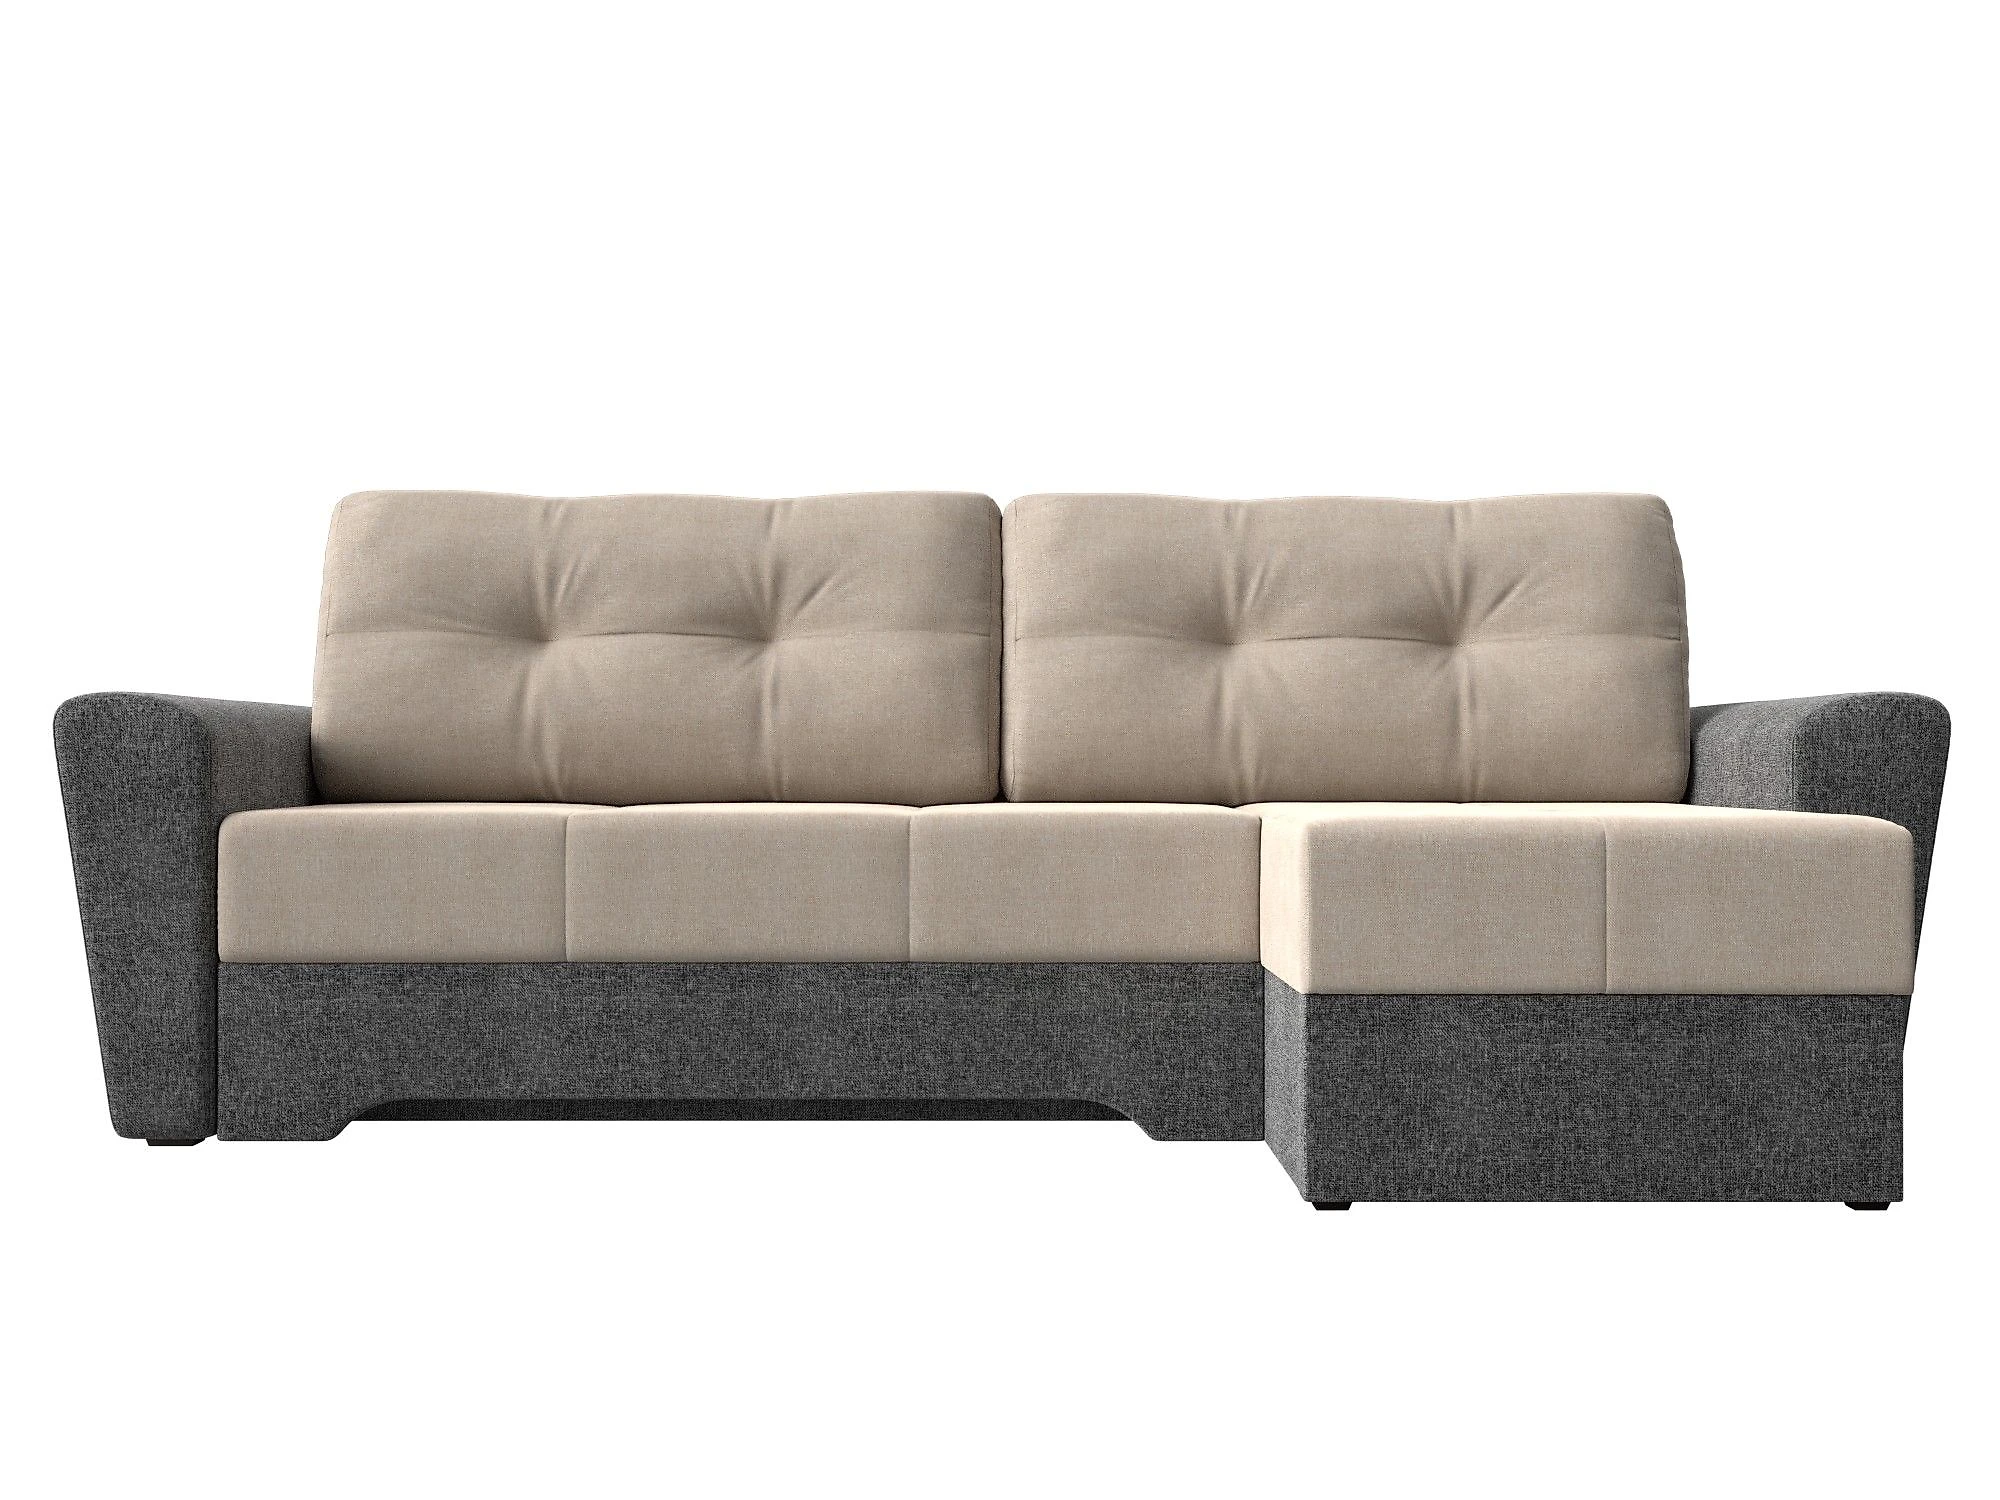  угловой диван из рогожки Амстердам Кантри Дизайн 6